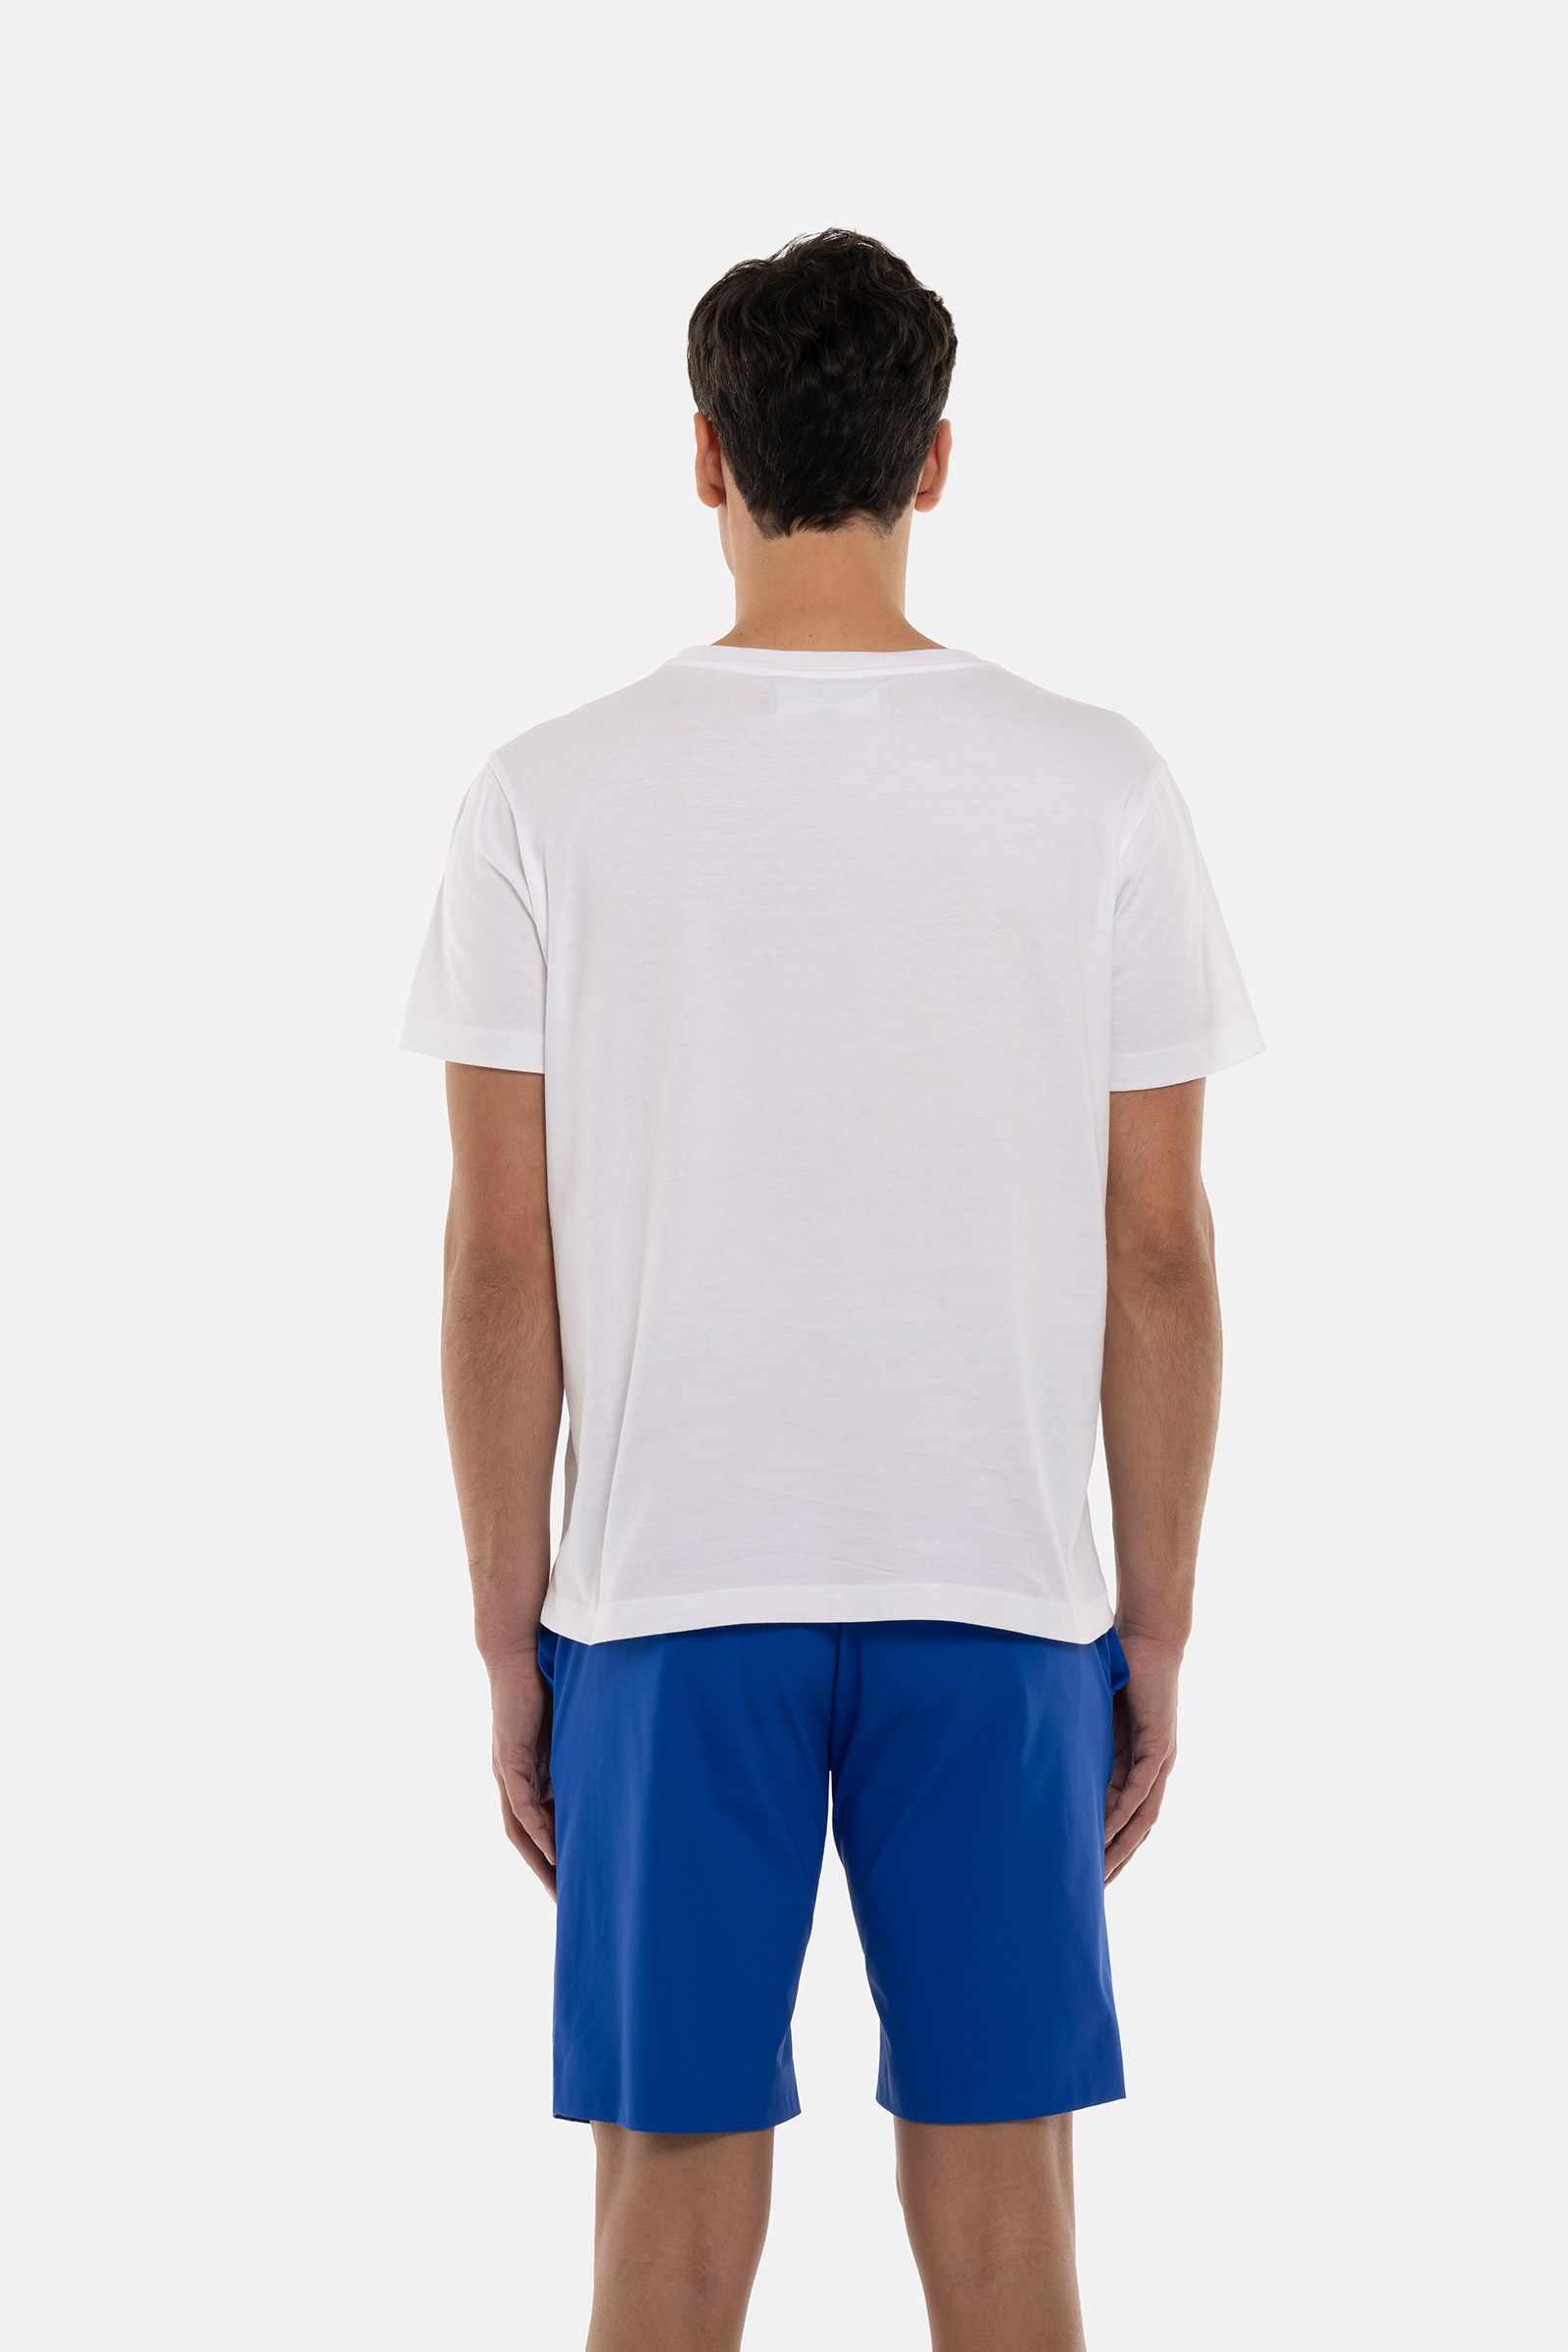 PALMS SKULL TEE - WHITE - Hydrogen - Luxury Sportwear